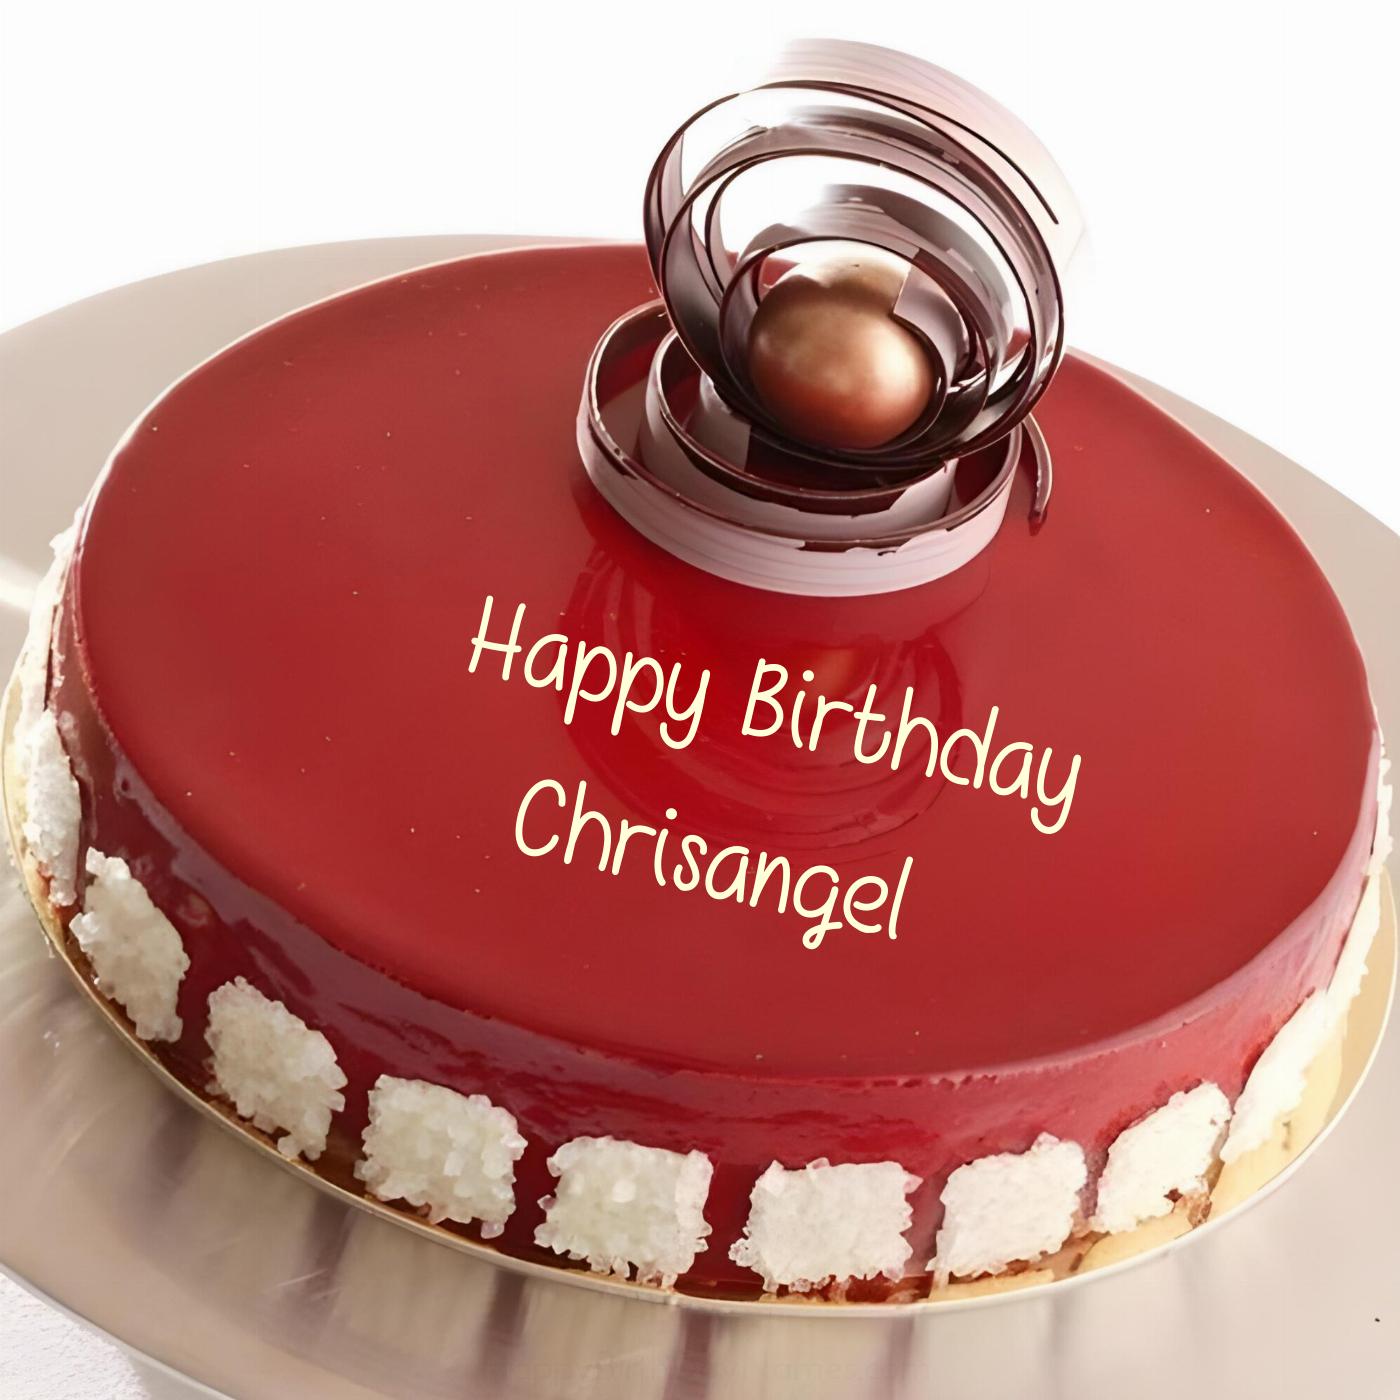 Happy Birthday Chrisangel Beautiful Red Cake